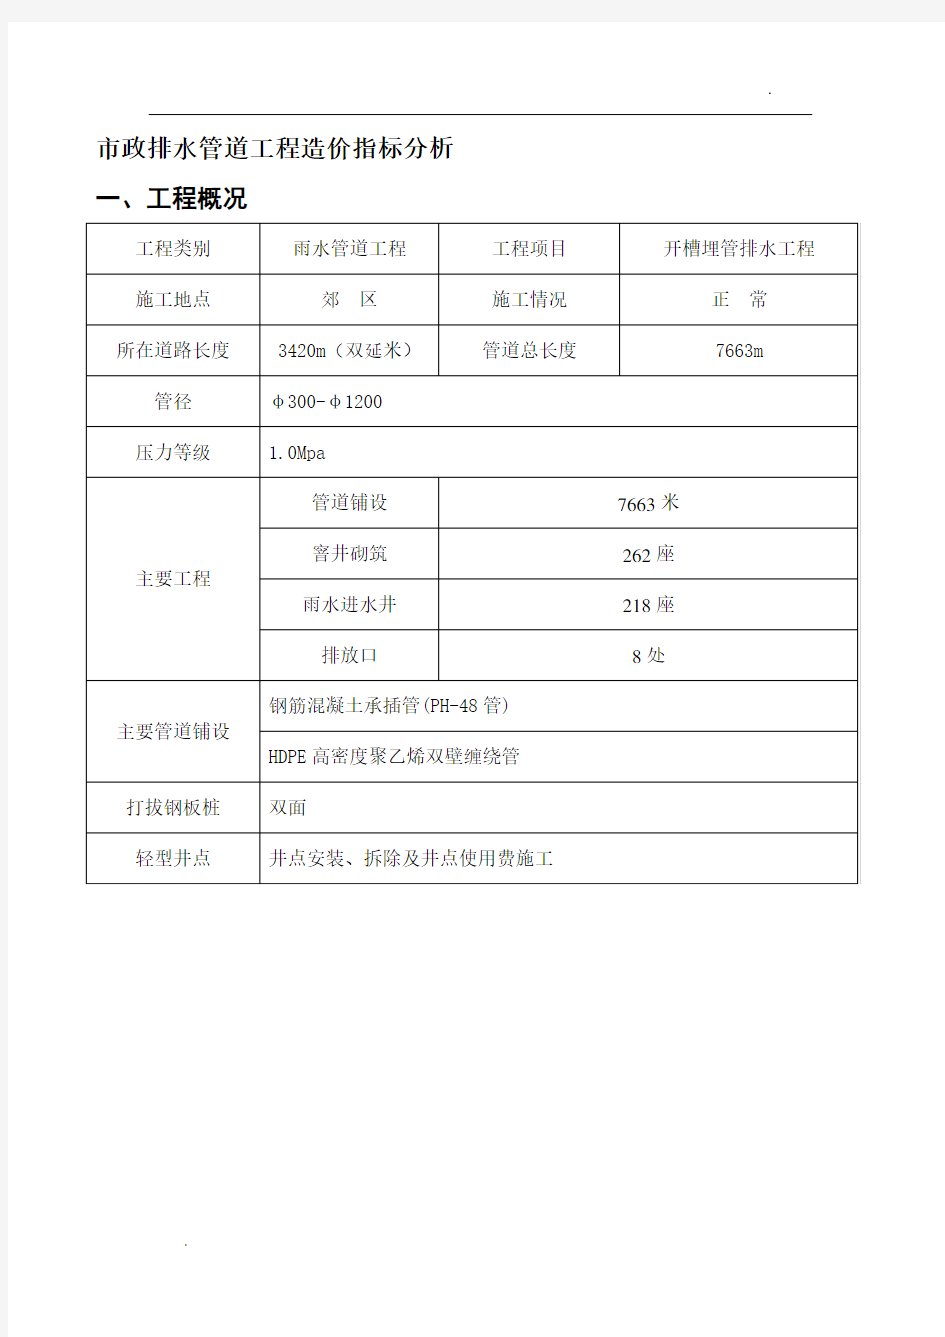 上海近三年市政工程造价指标分析 (17)